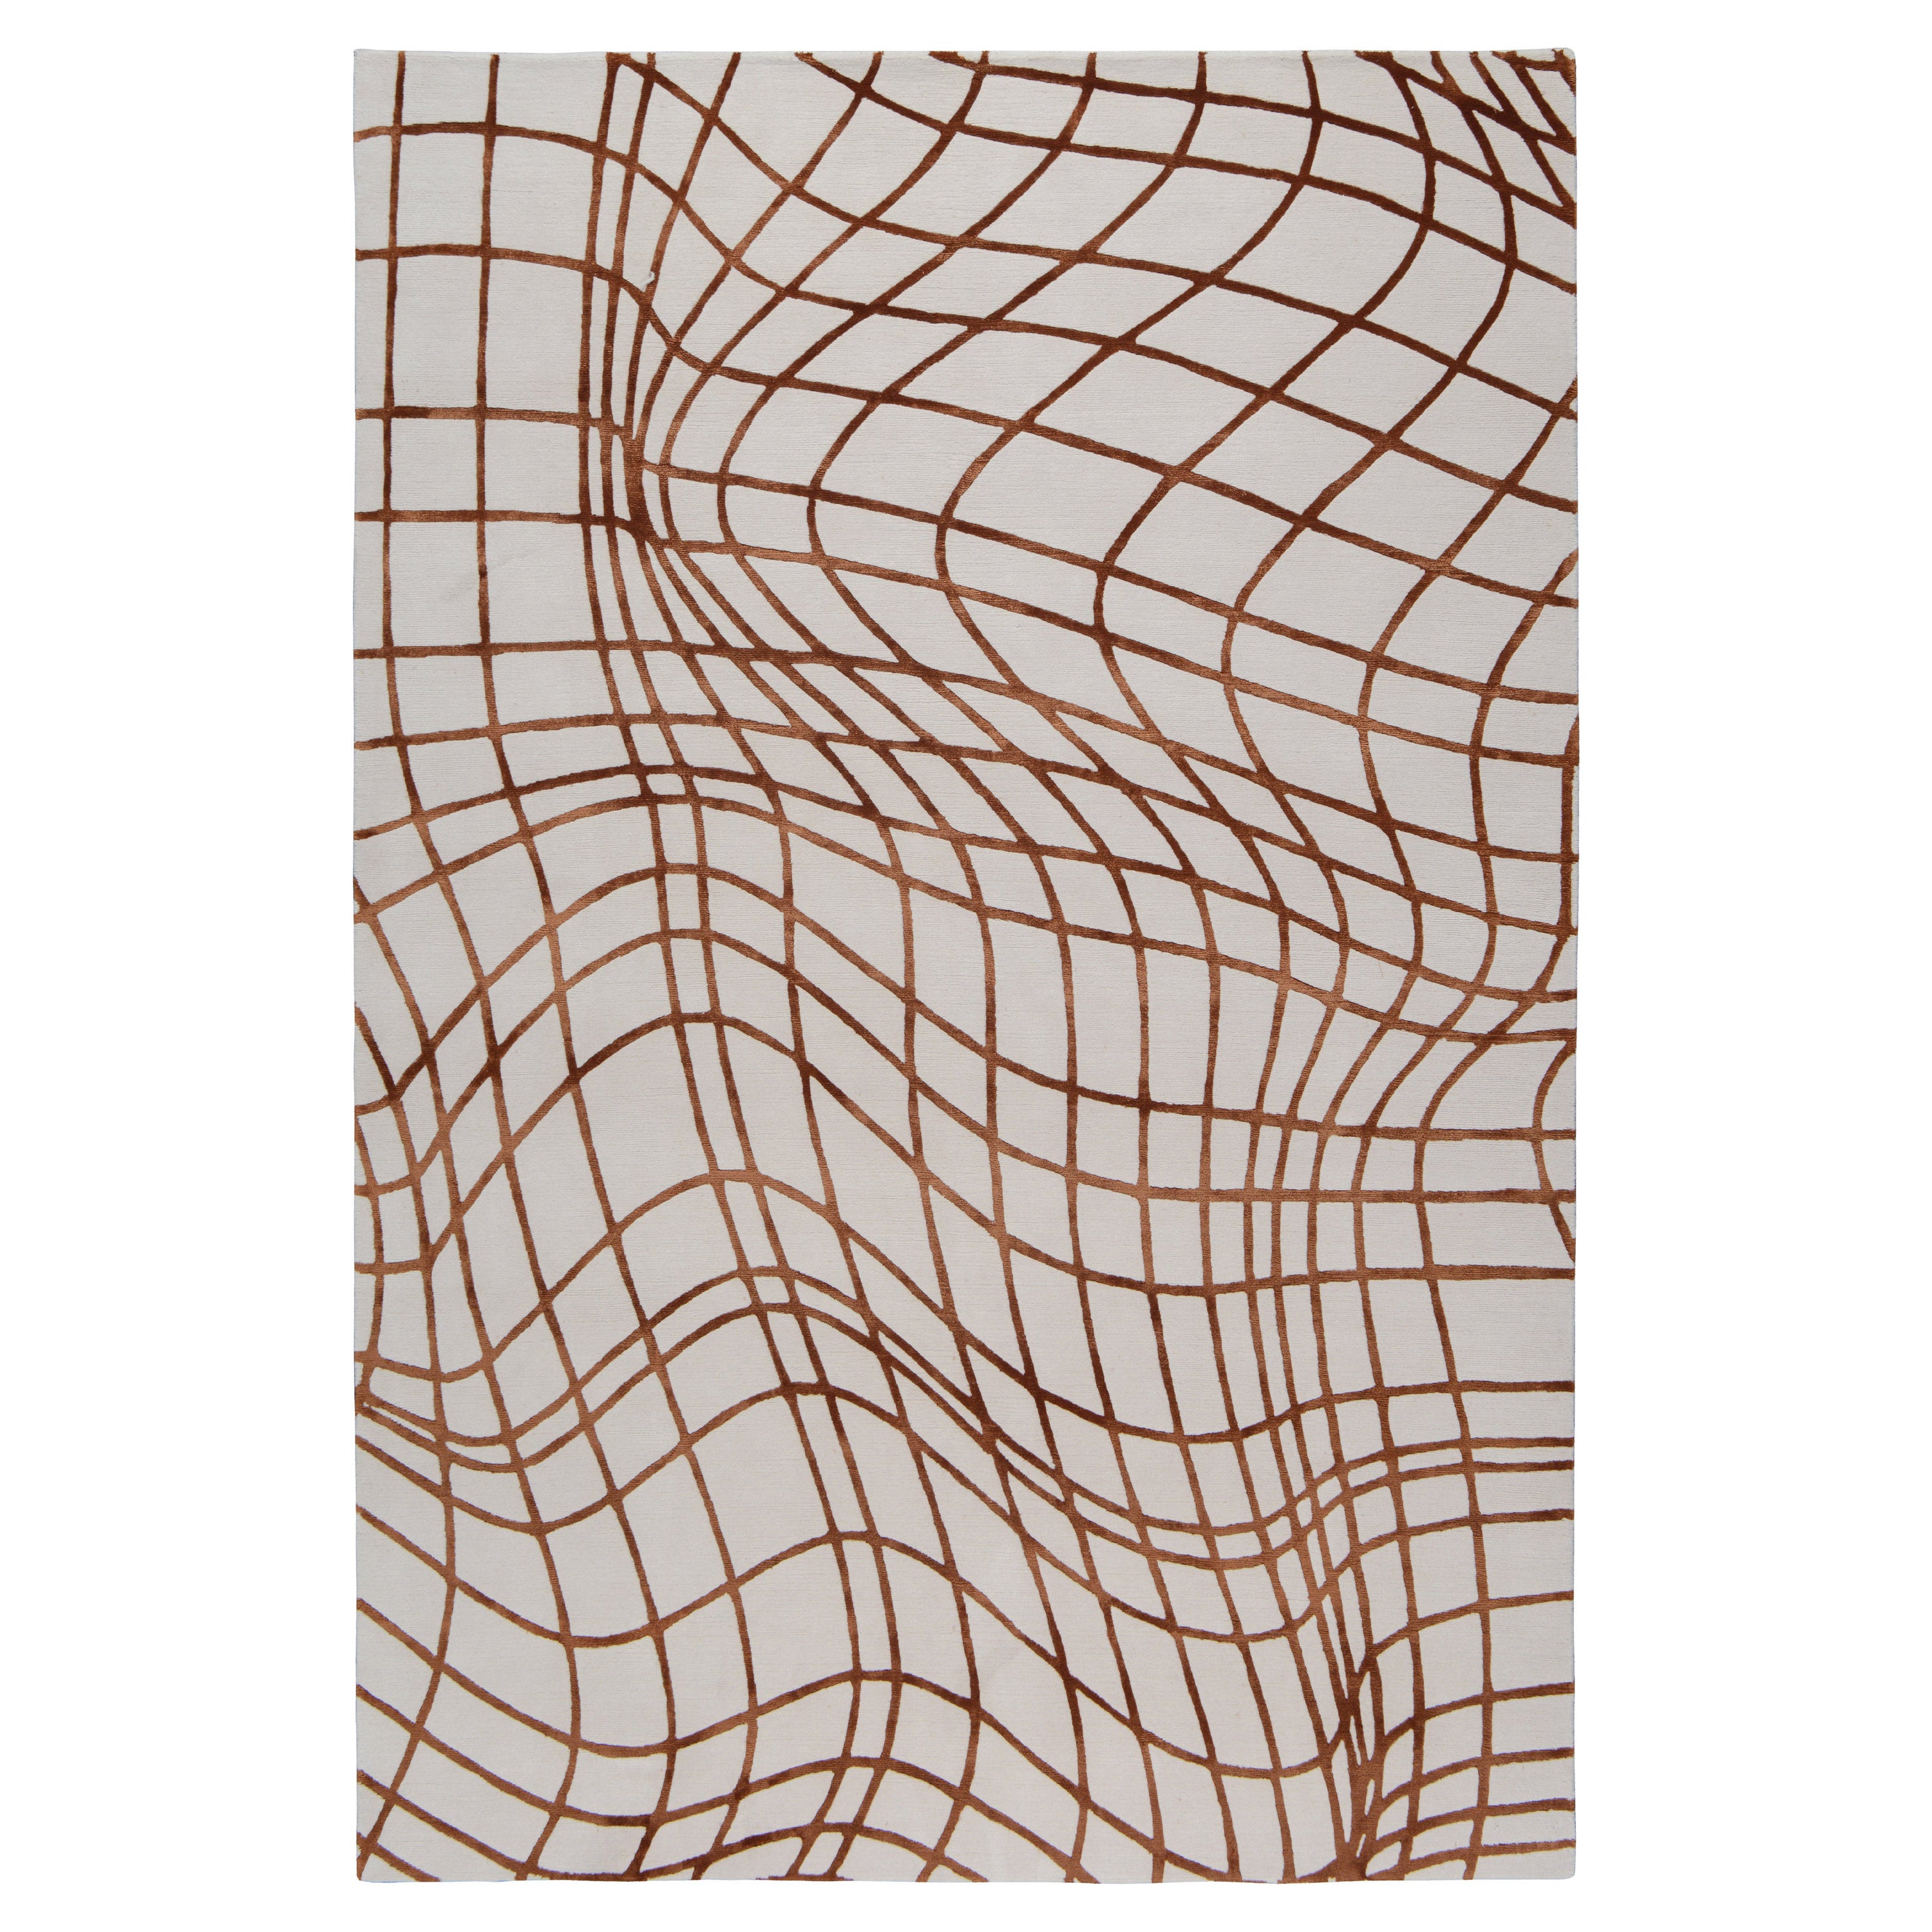 Wavelength zeigt ein verzerrtes Rastermotiv, das von einem 3D-Diagramm inspiriert ist. Der Teppich verwandelt die abstrakten Linien in ein kühnes Motiv, das perfekt ist, um einen Raum zu bereichern. Von unseren erfahrenen Handwerkern in Nepal aus